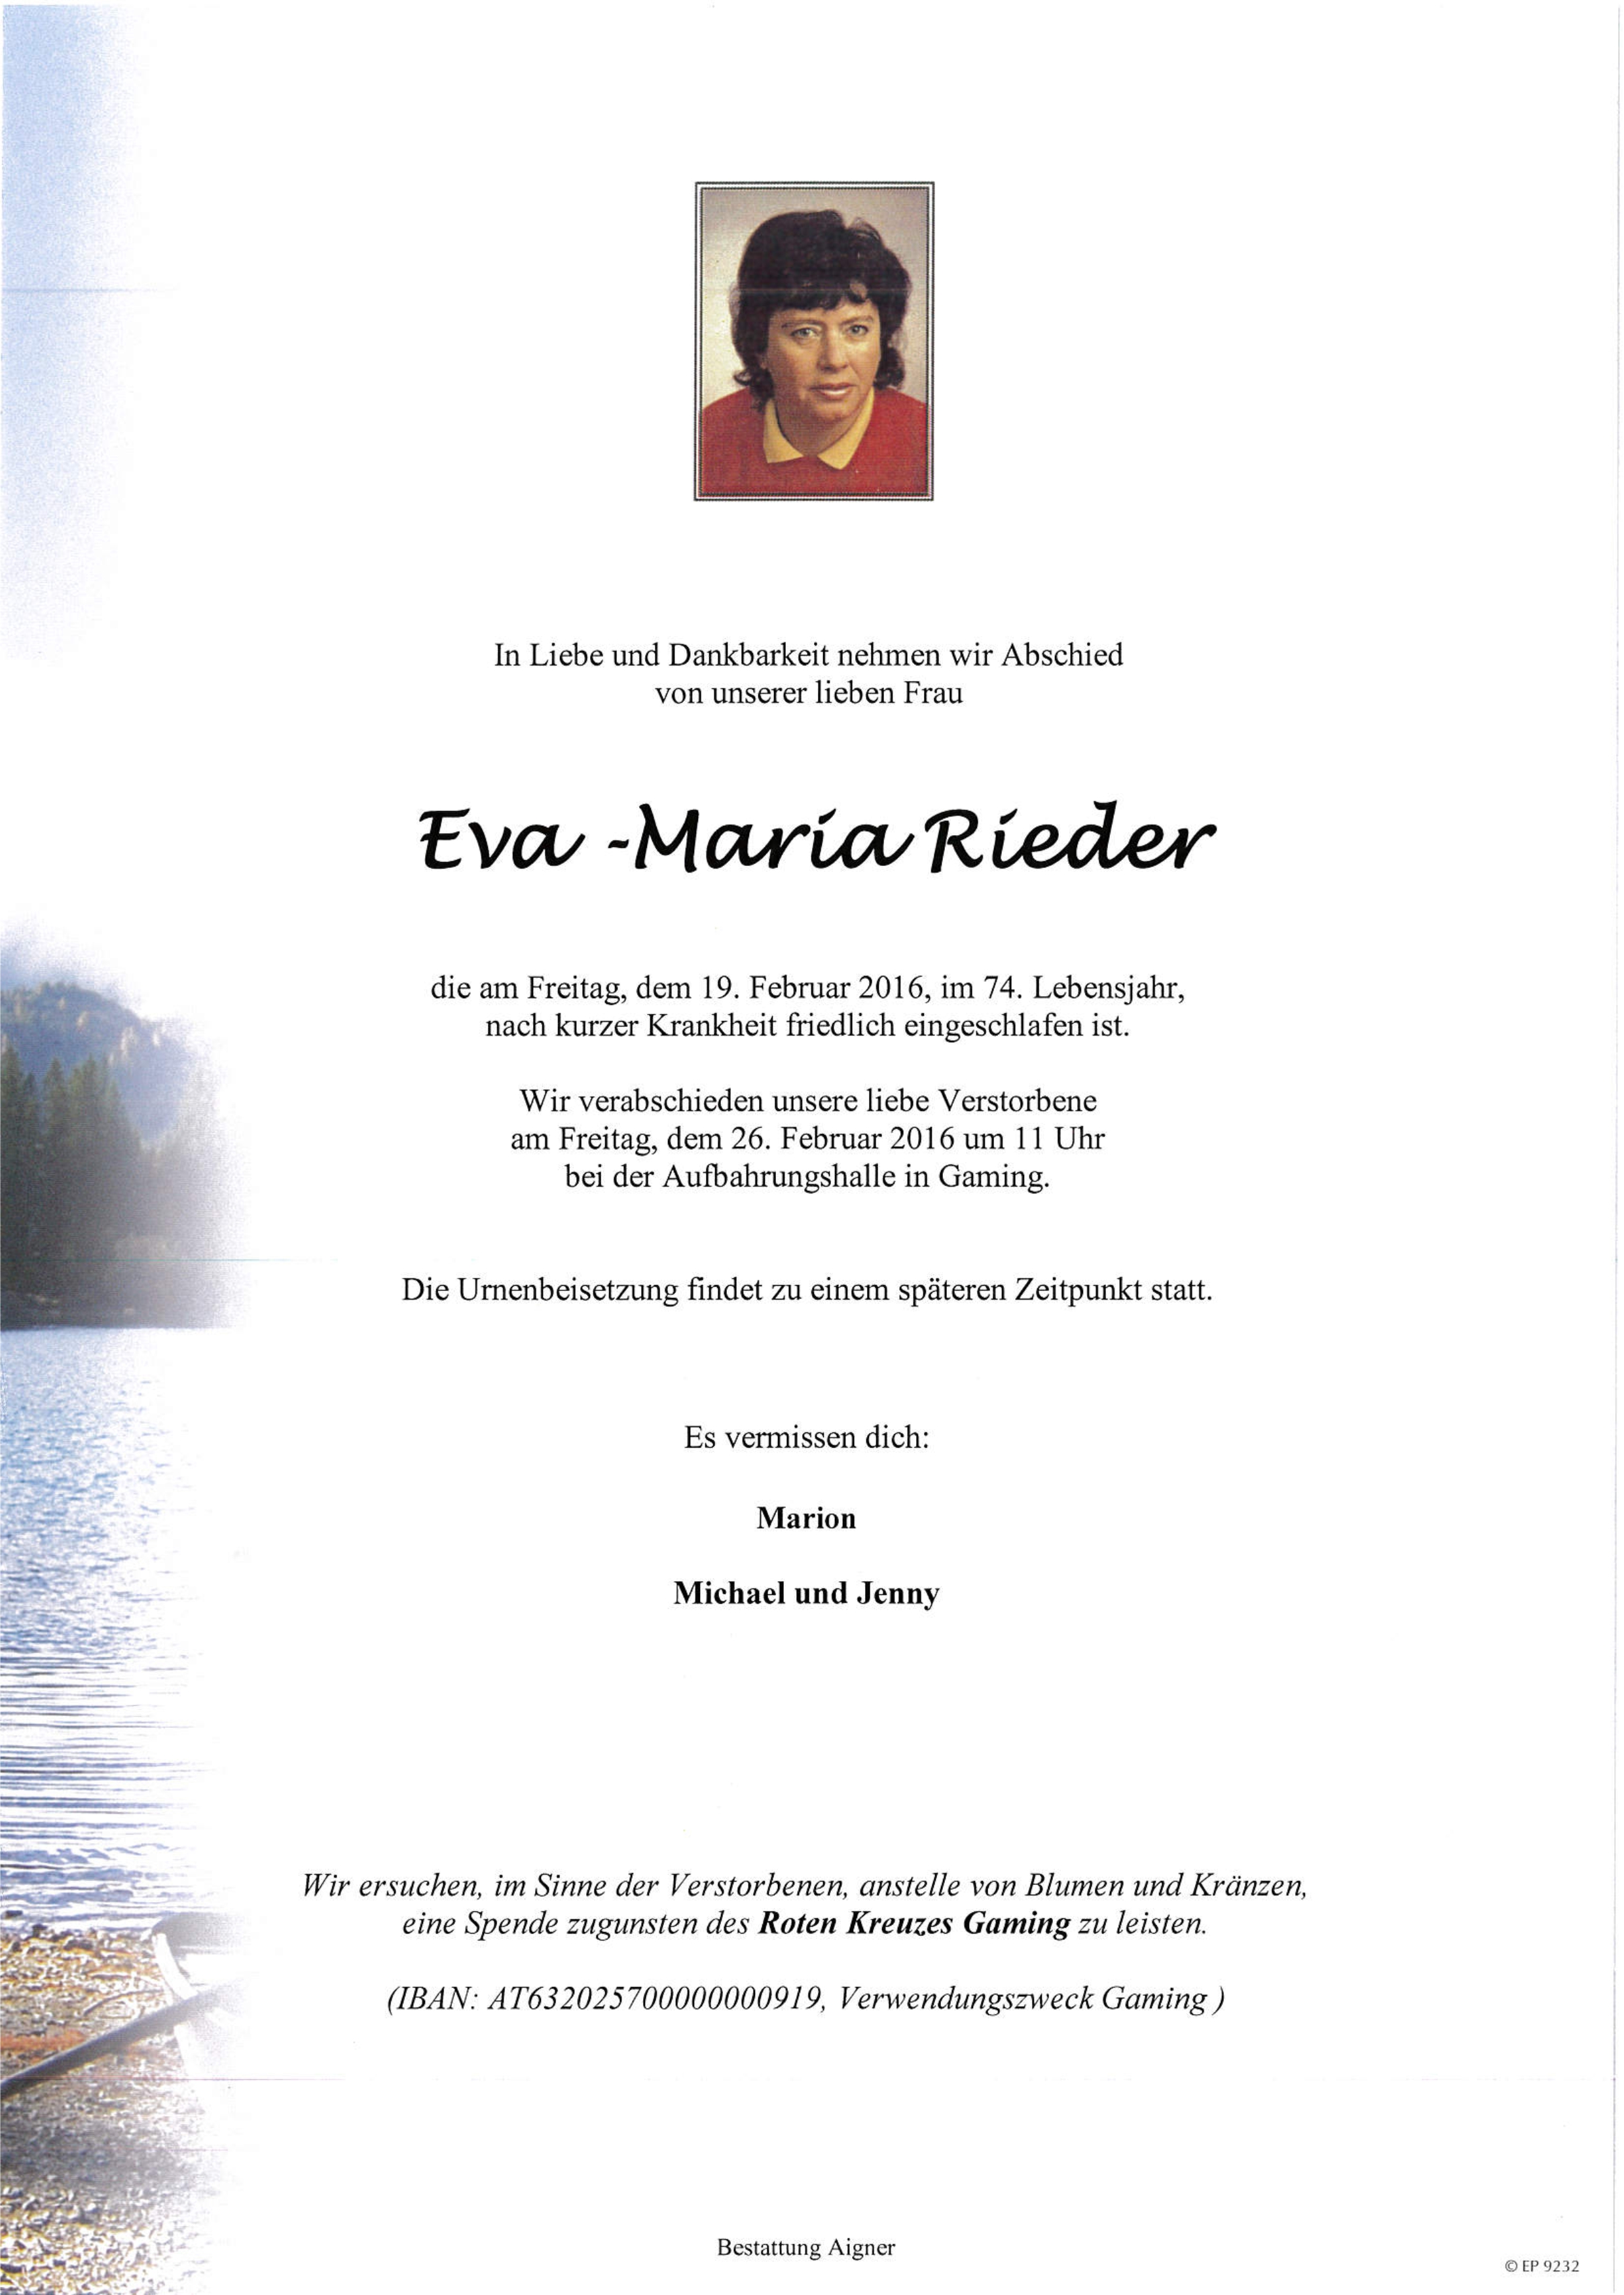 Eva-Maria Rieder